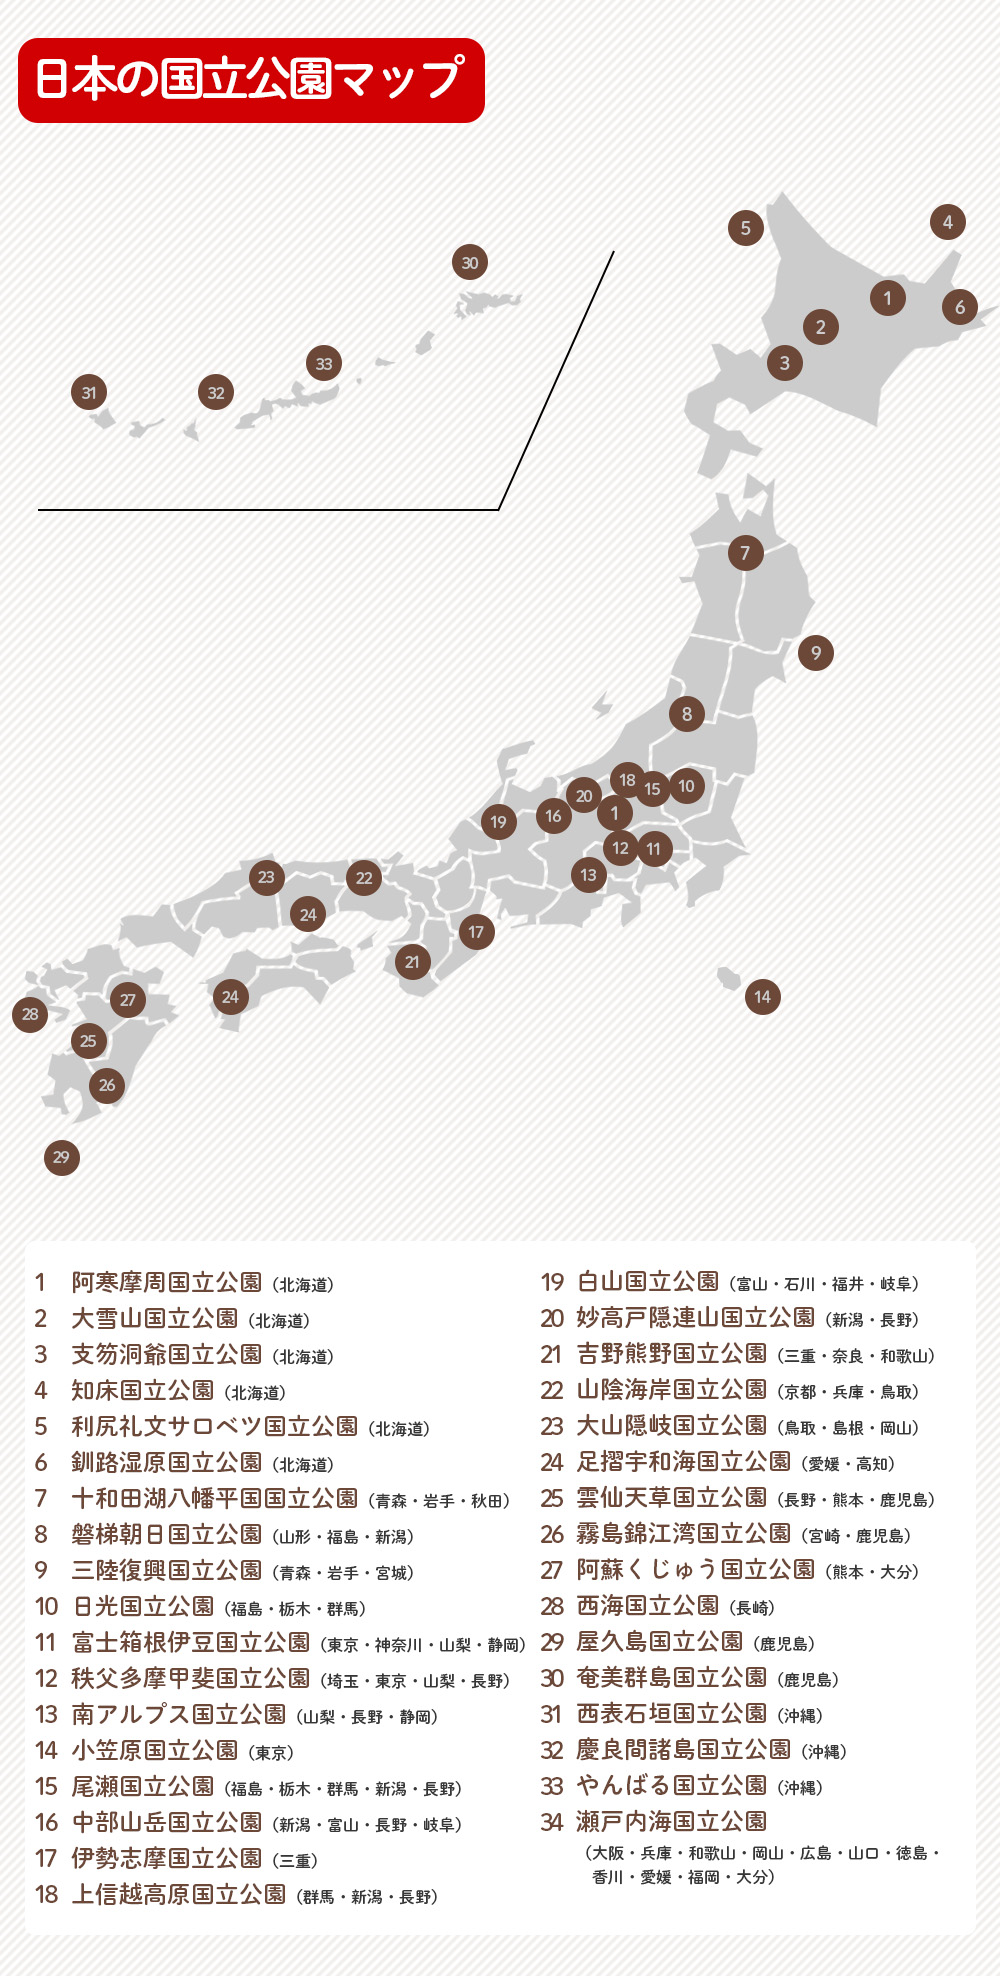 日本の国立公園一覧表